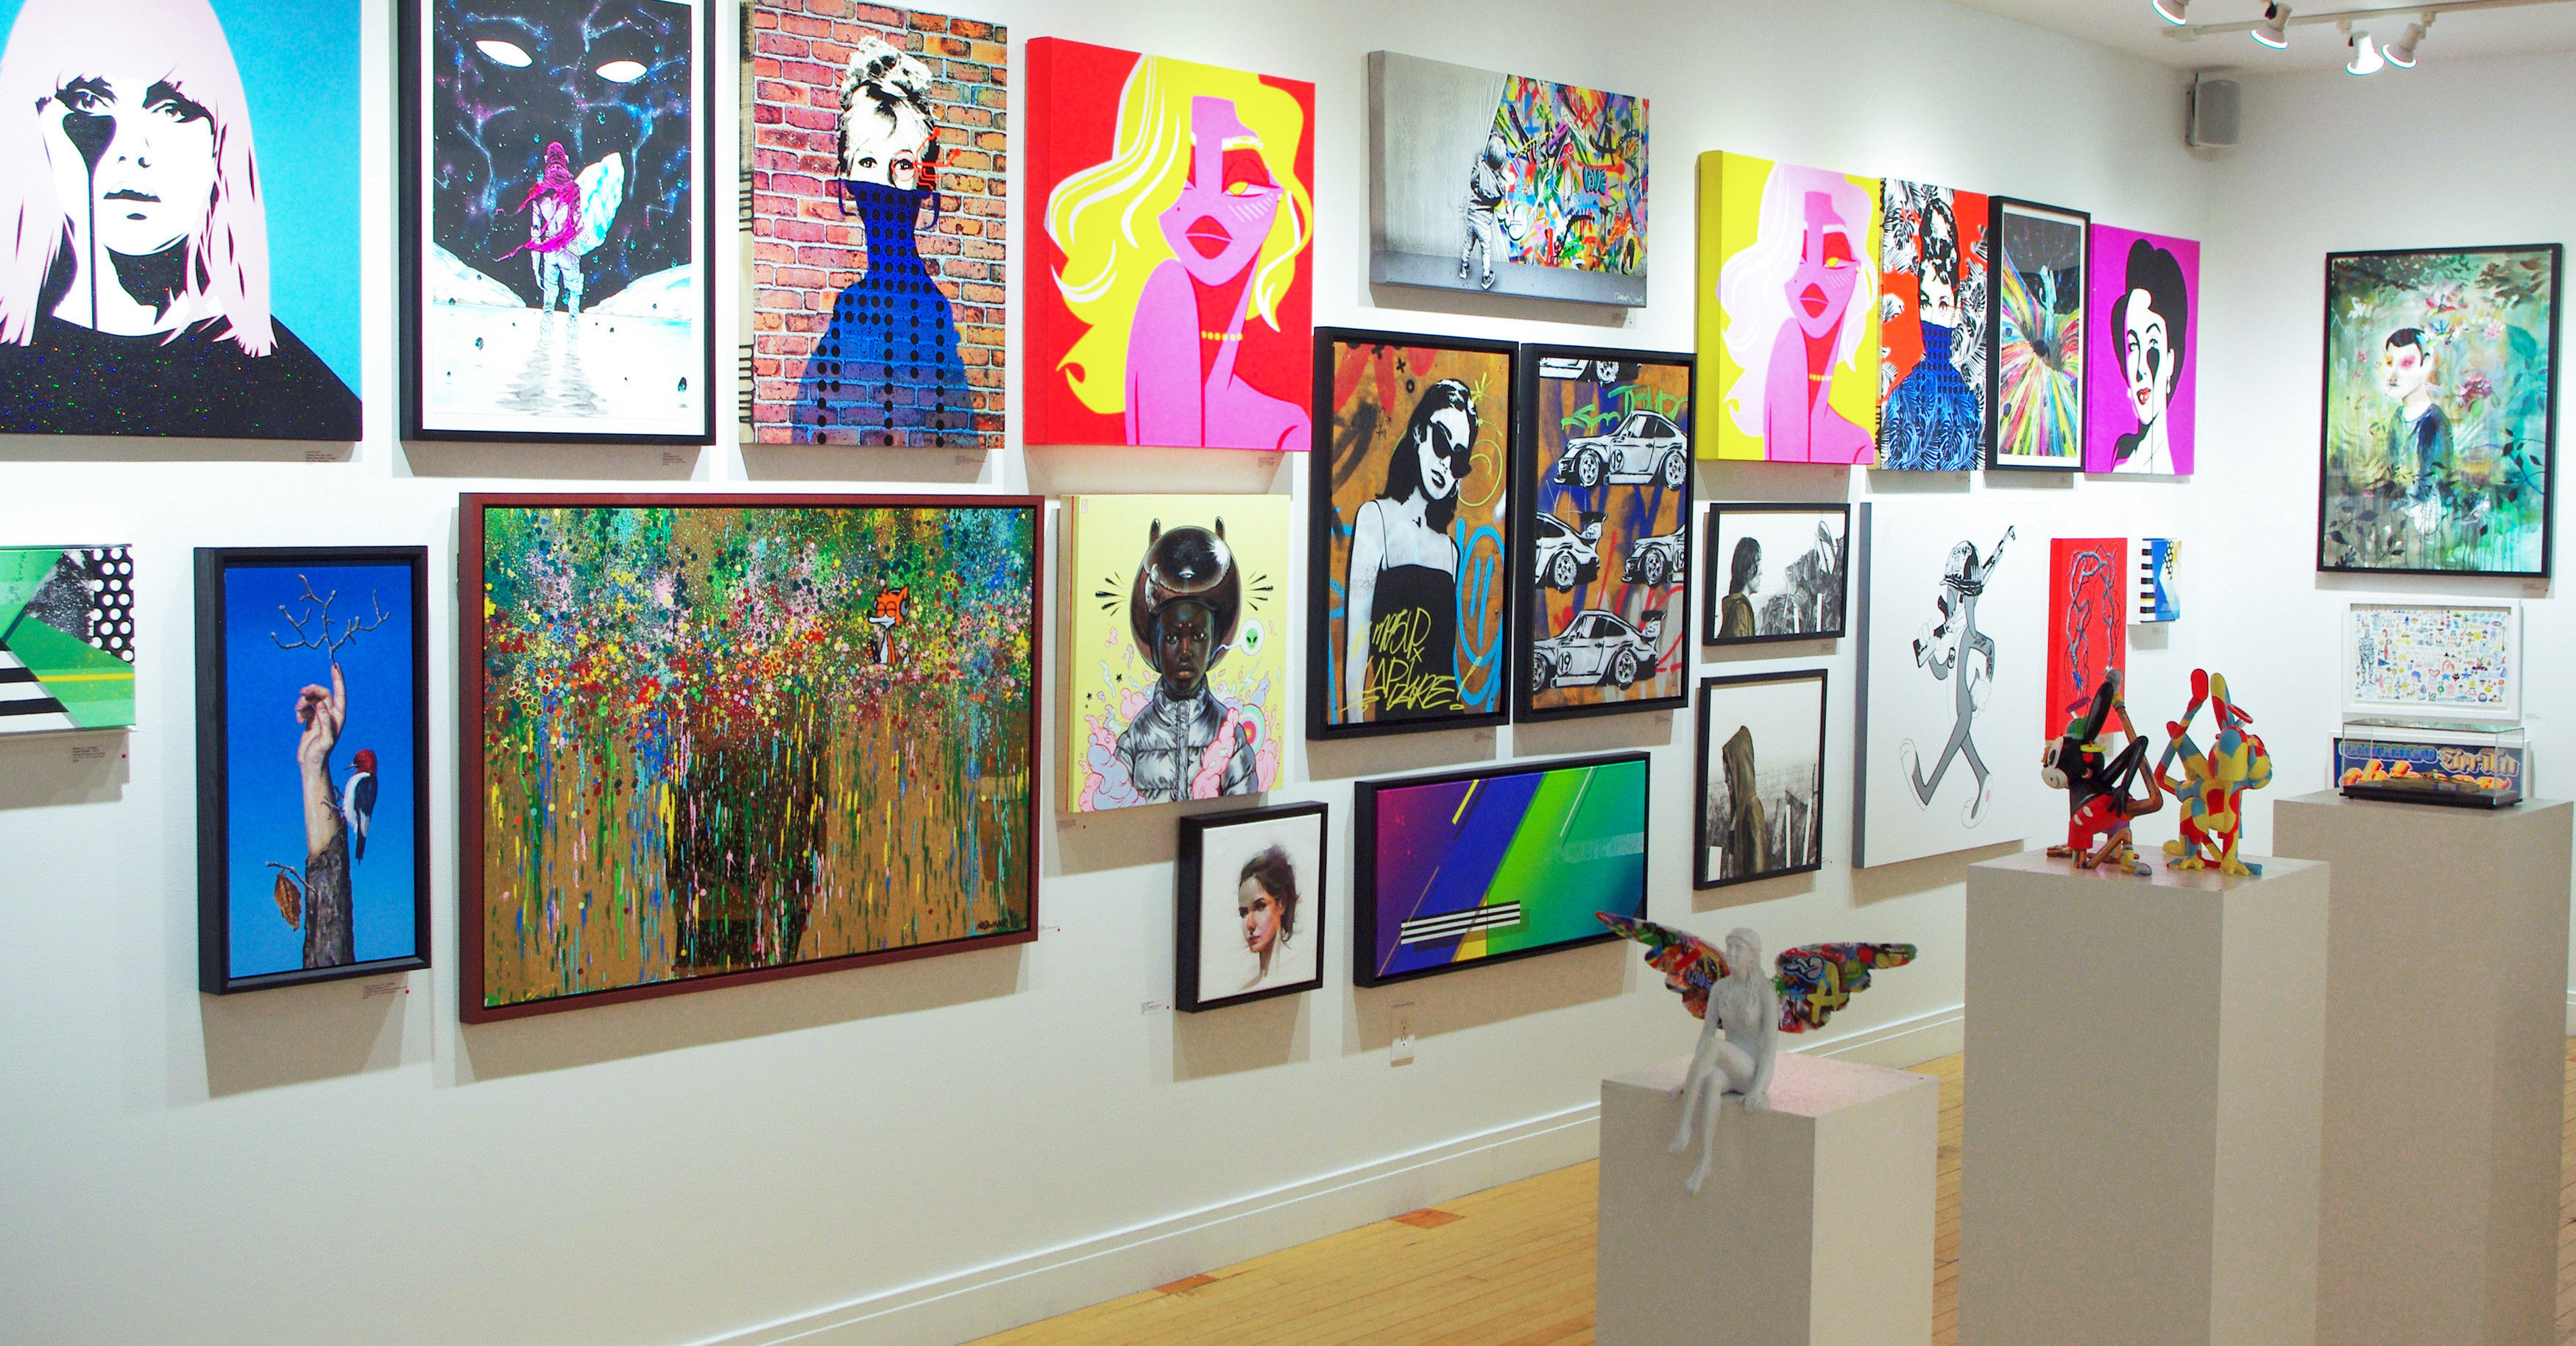 Comprar arte; Visite una galería de renombre e infórmese sin compromiso antes de comprar arte.